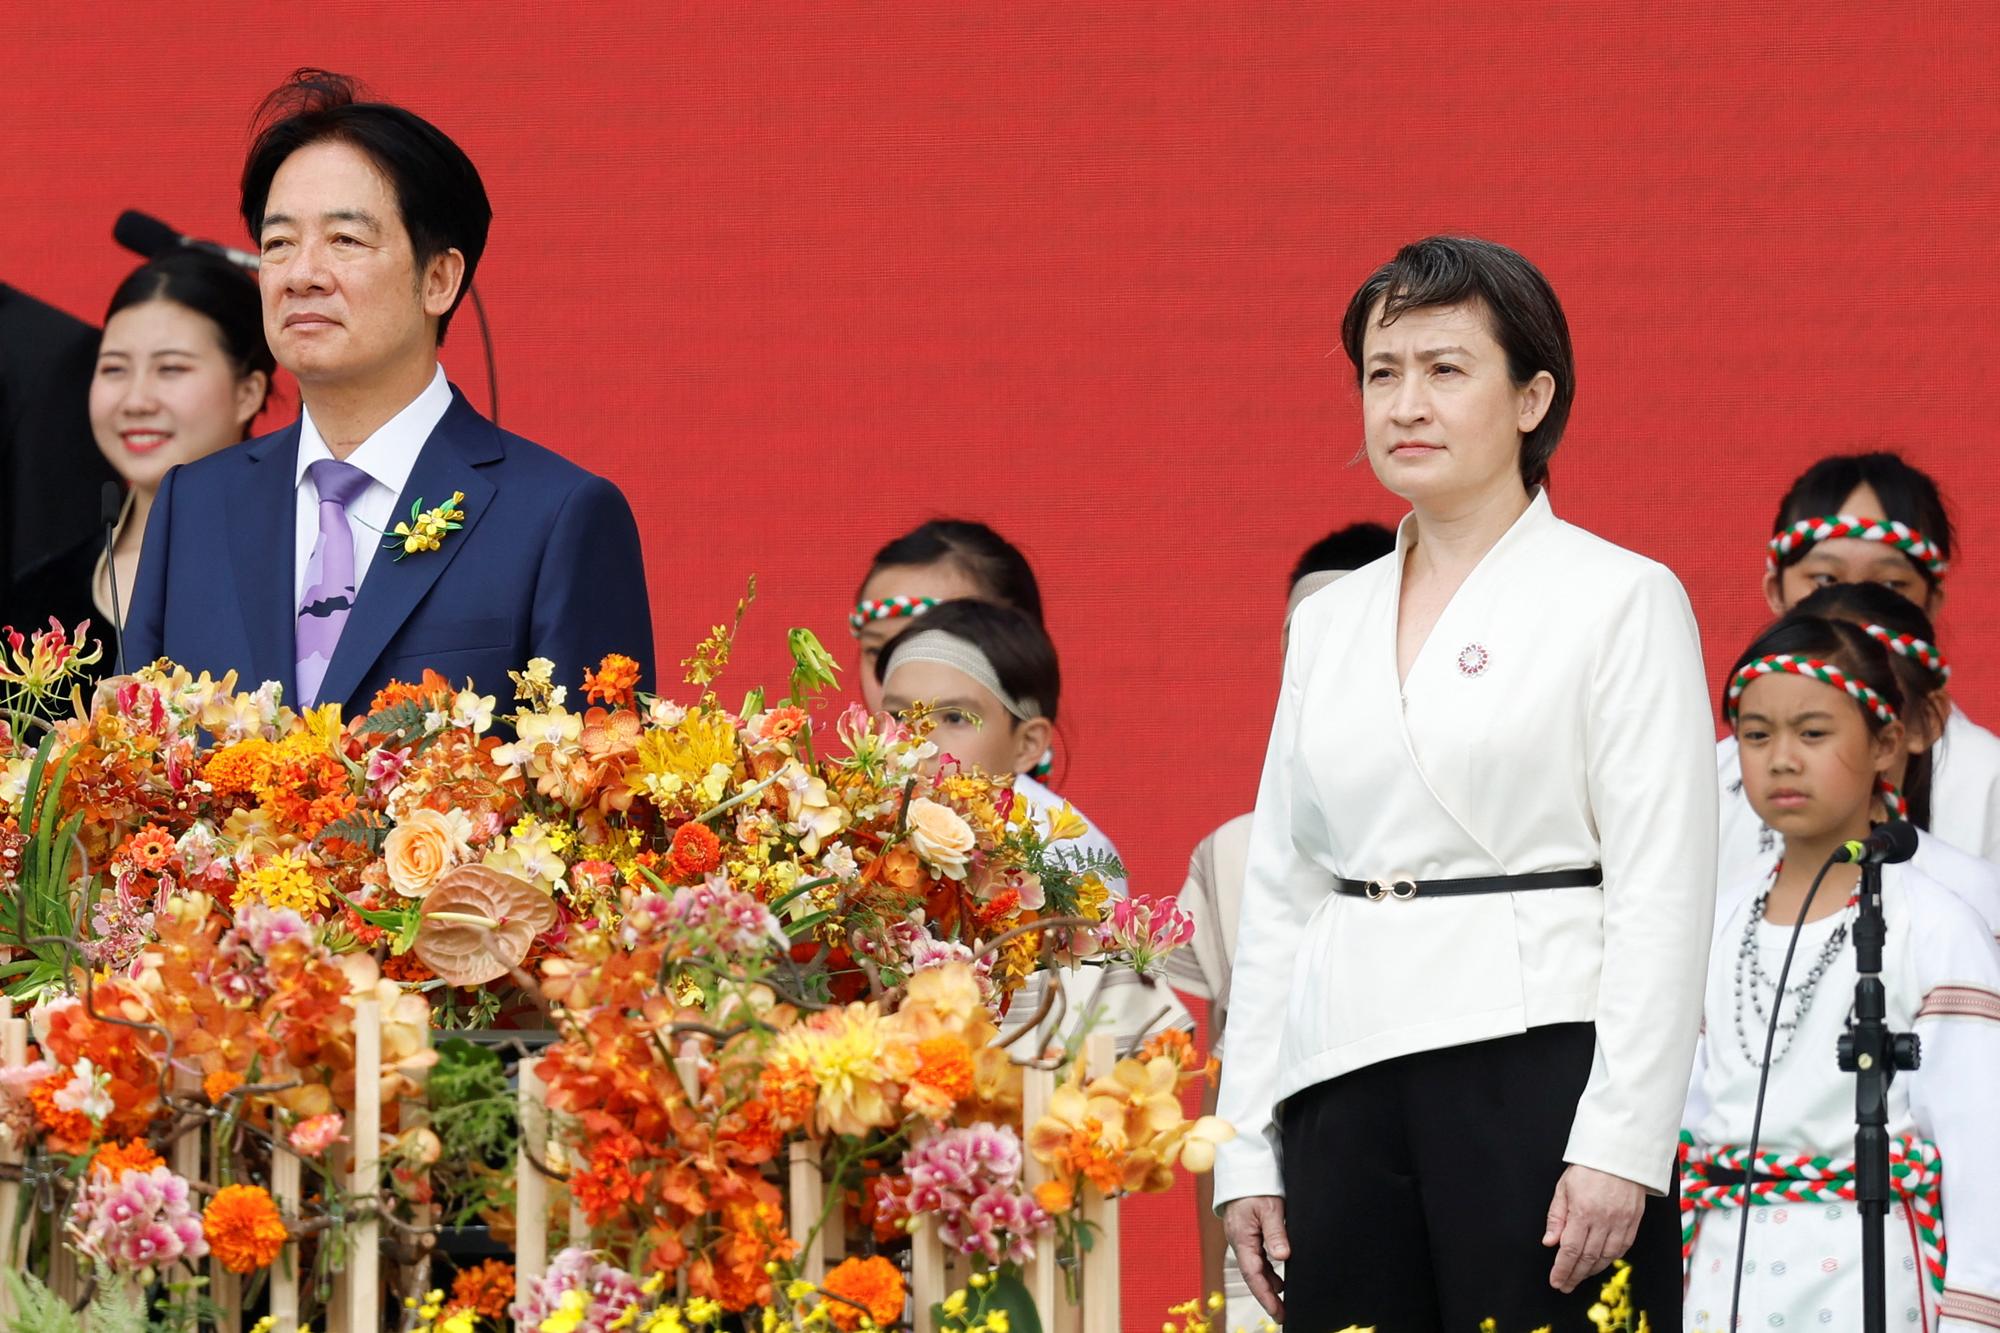 Le nouveau président de Taïwan Lai Ching-te et la nouvelle vice-présidente Hsiao Bi-khim lors de leur cérémonie d'investiture au palais présidentiel de Taïpei. [REUTERS - Carlos Garcia Rawlins]